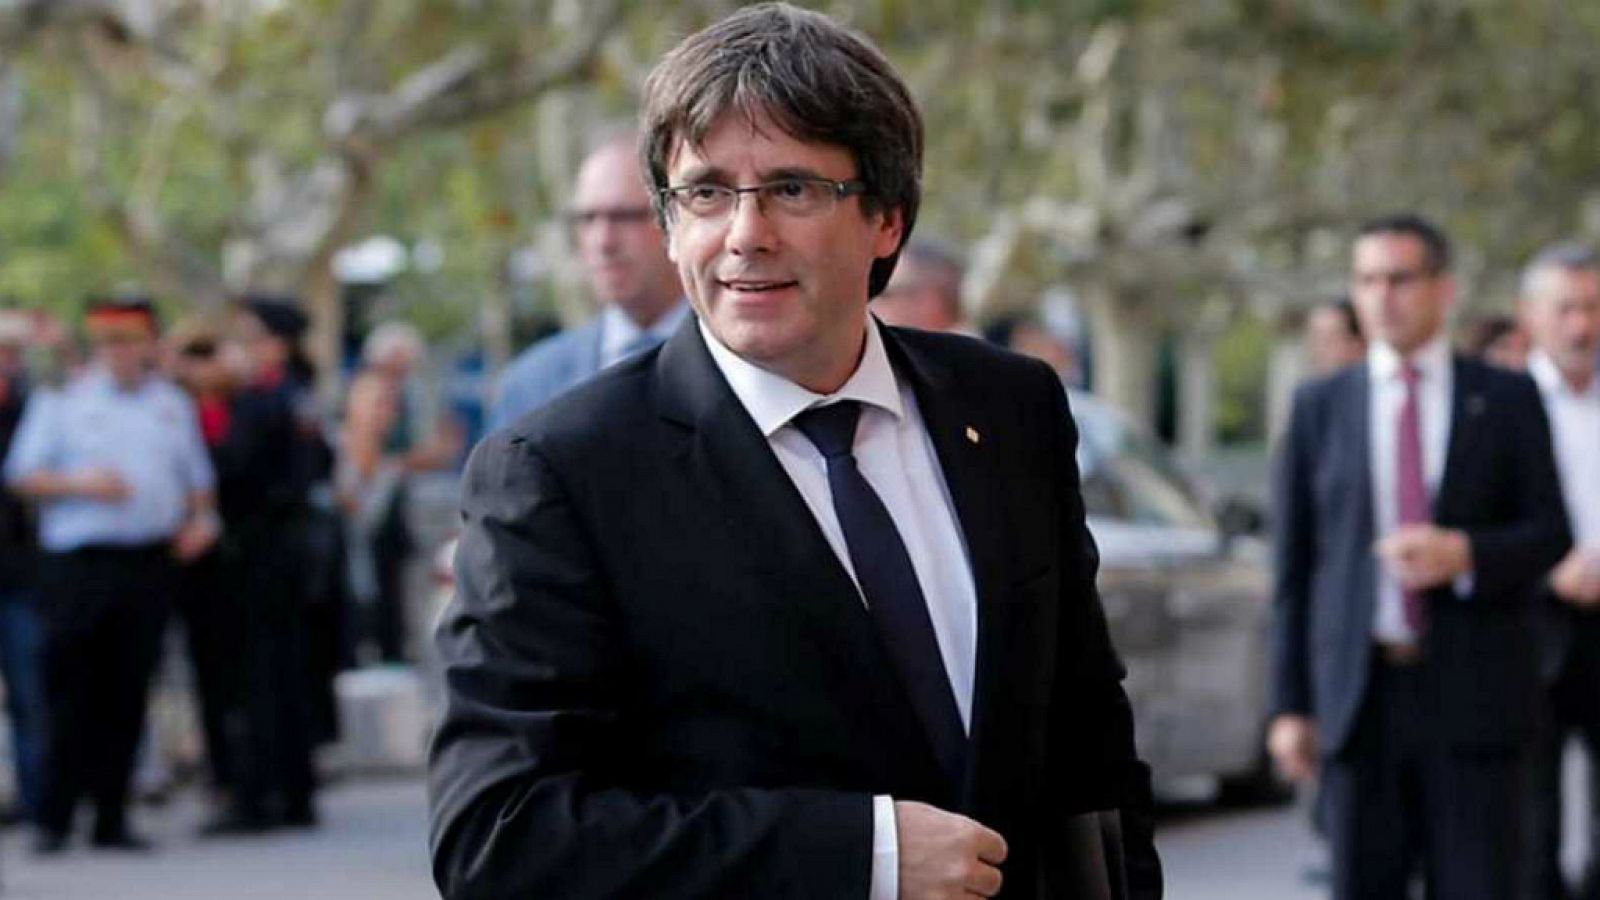  14 horas - El abogado de Puigdemont  trata de recoger su acta de europarlamentario - Escuchar ahora